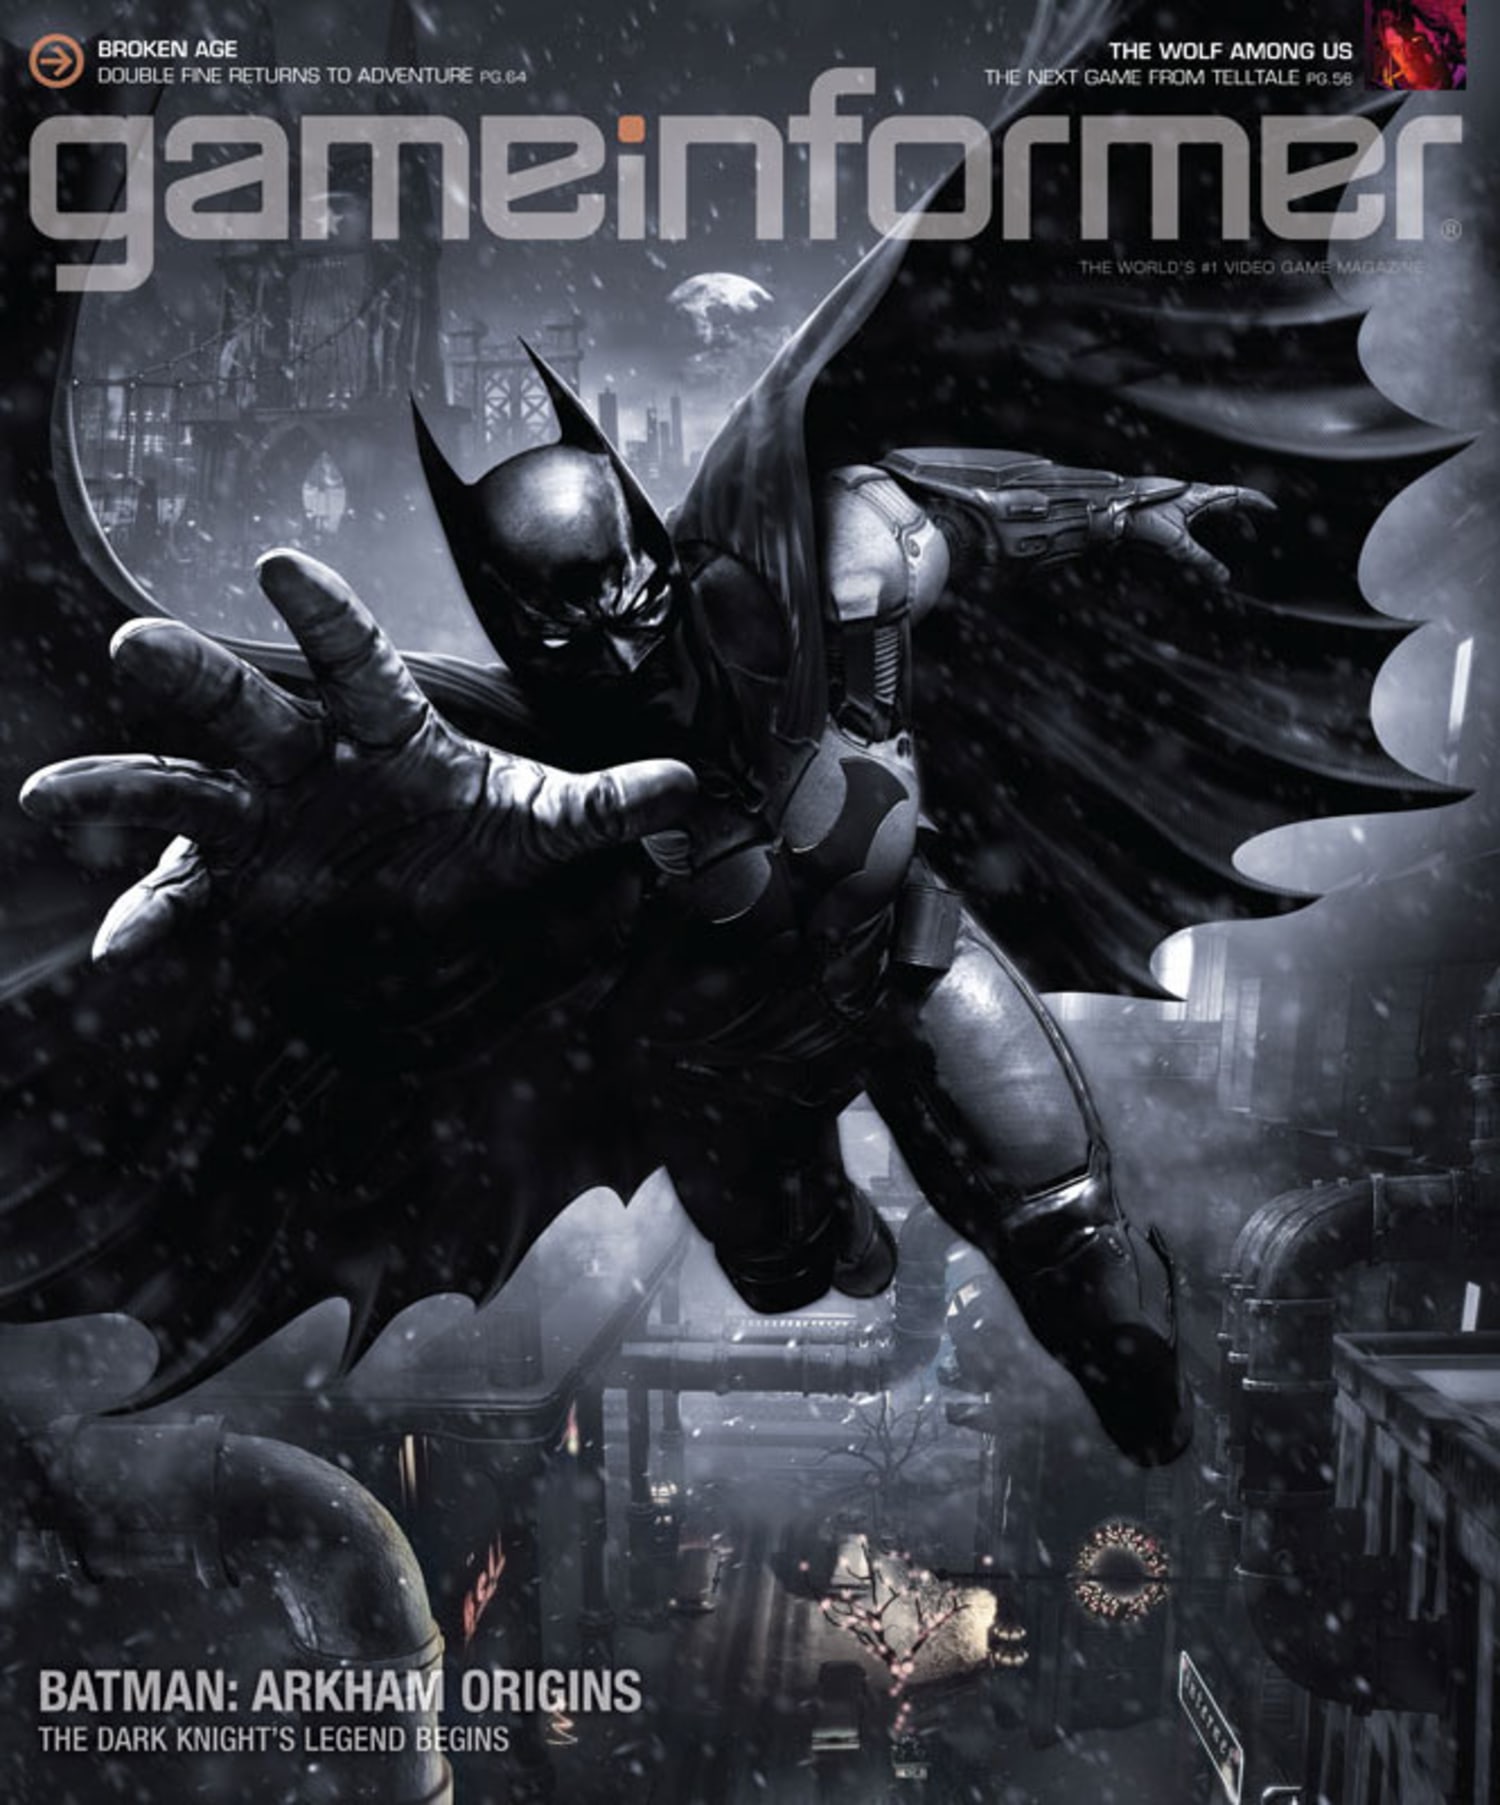 A Comprehensive History of Batman Games